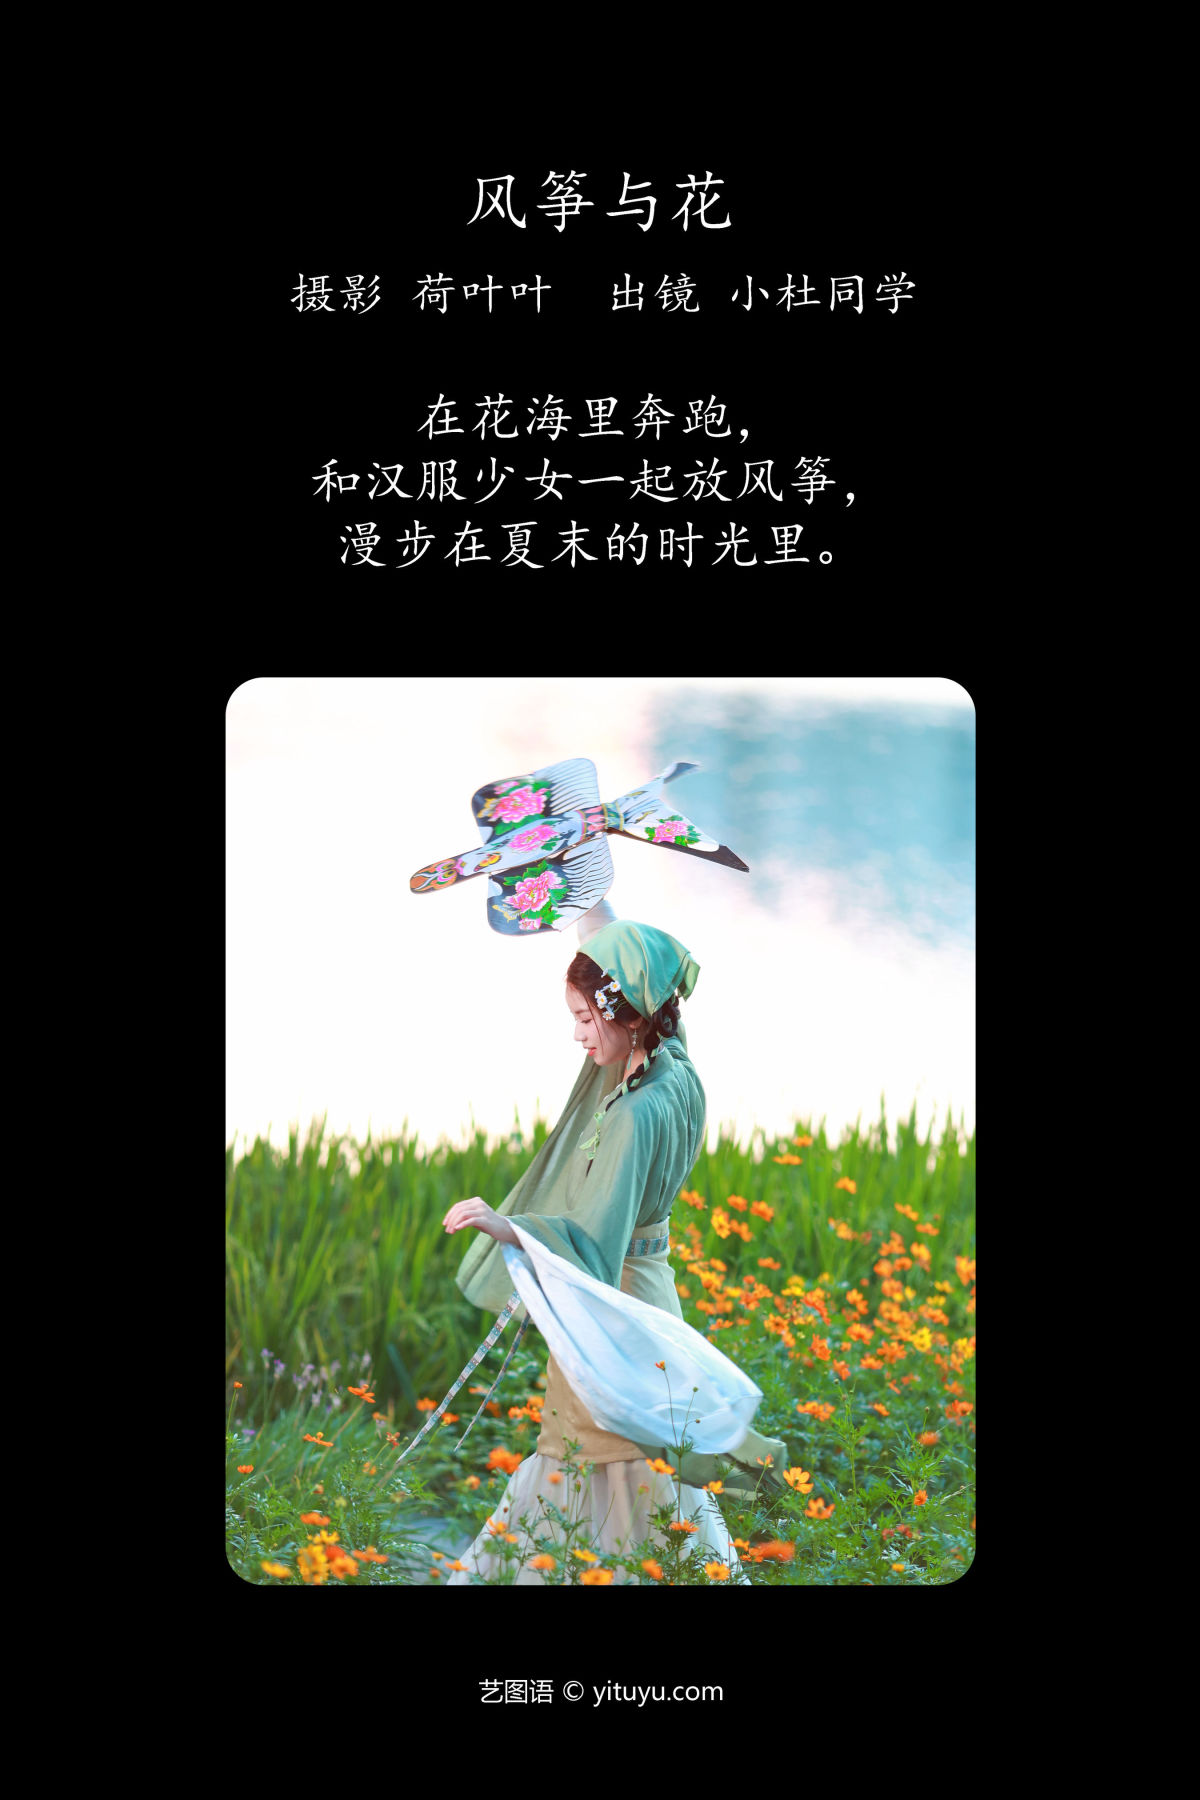 荷叶叶_小杜同学《风筝与花》美图作品图片2